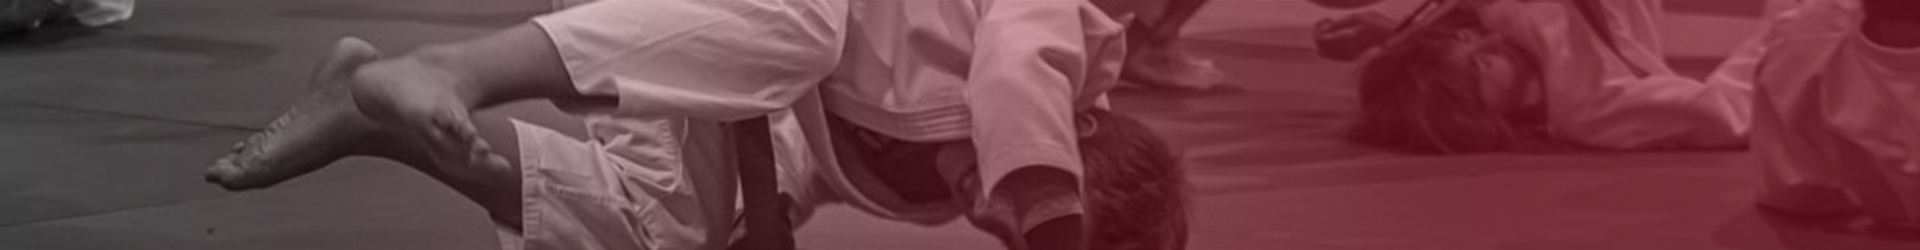 SESSIÓ 01. Judo Training